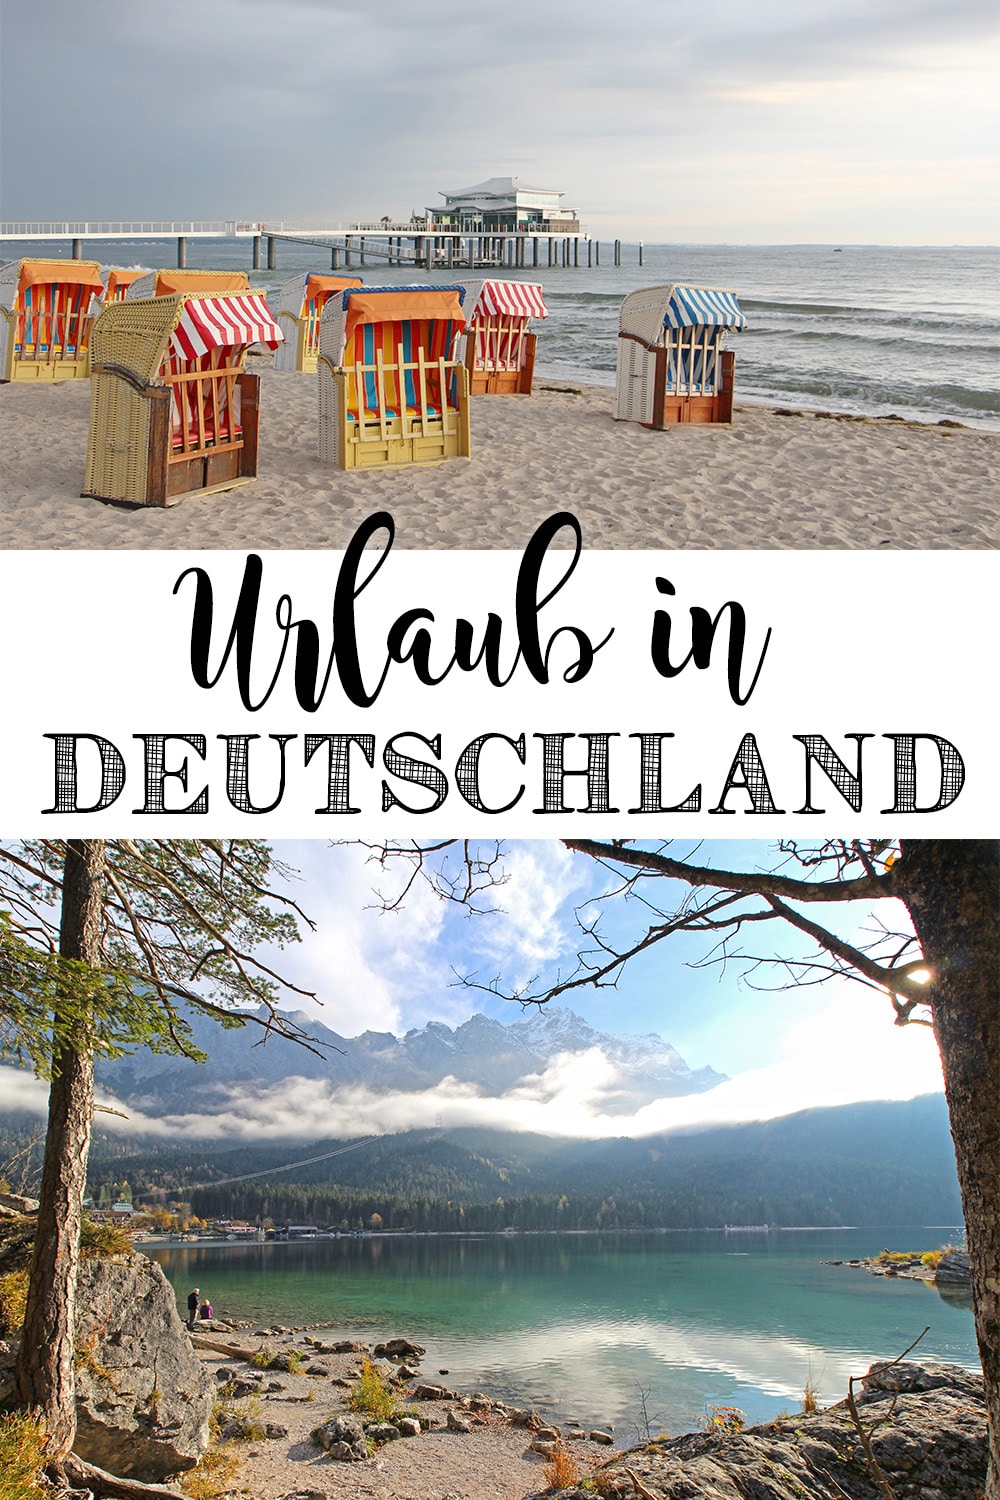 Urlaub in Deutschland - Tipps und Reiseziele